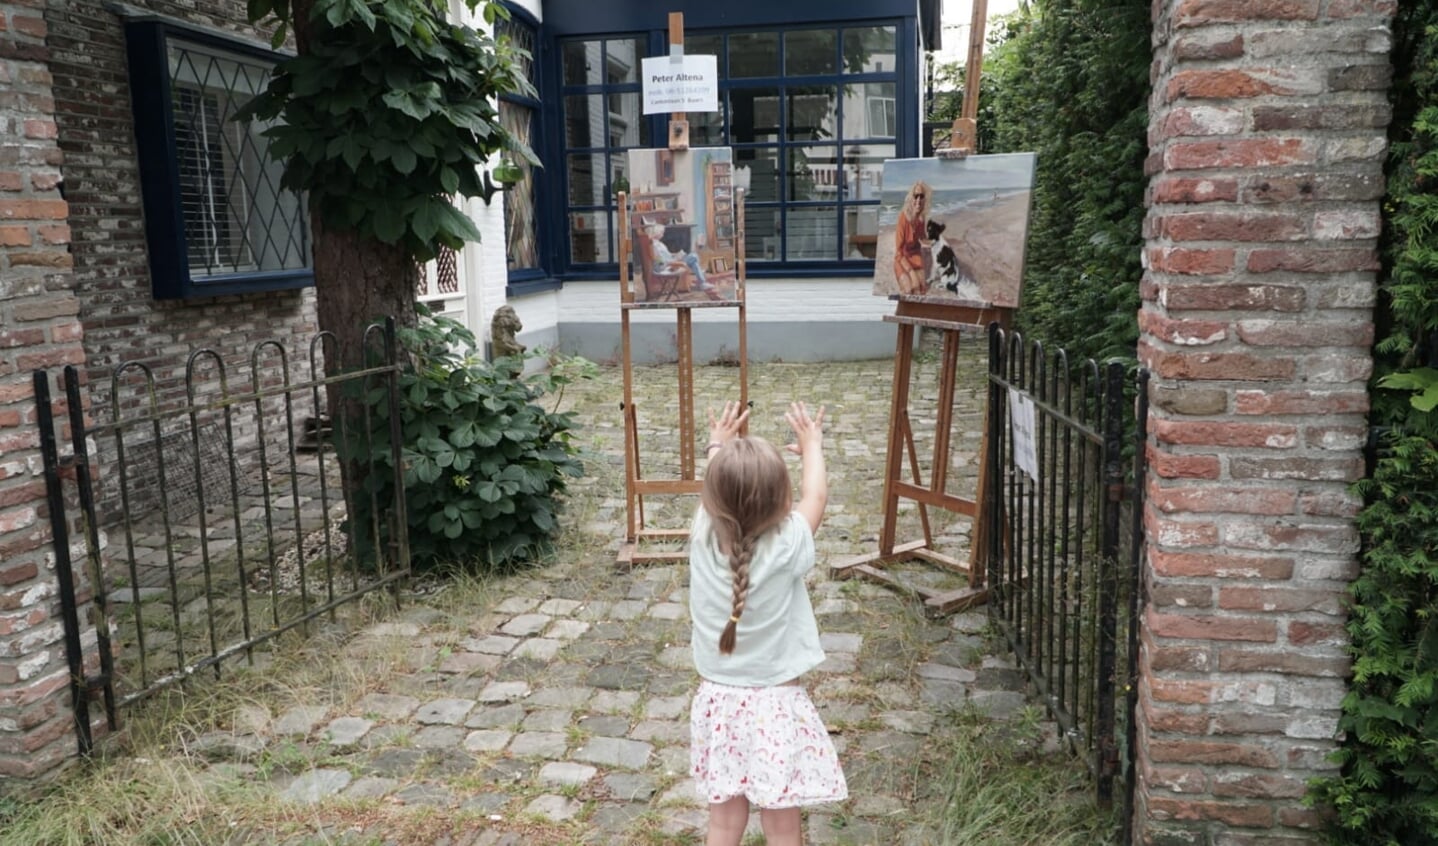 Jong en oud kan genieten van kunst tijdens de Kunst Kijk Route. Zoals van het werk van Peter Altena bij Wim Hogeveen.